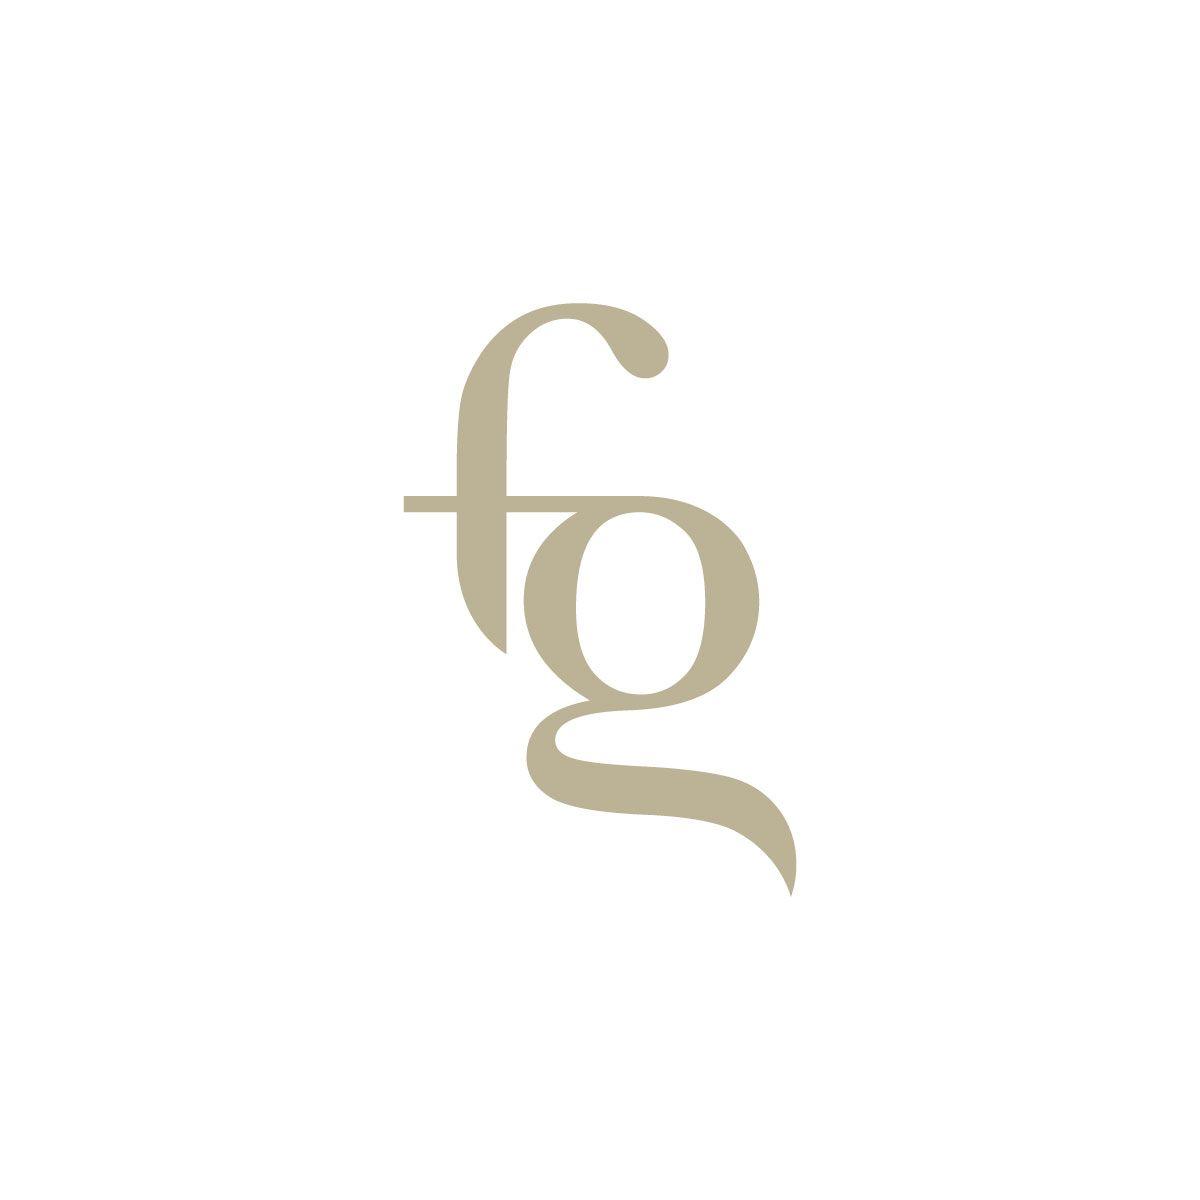 FG Logo - fg logo. Real estate logo design, Logos